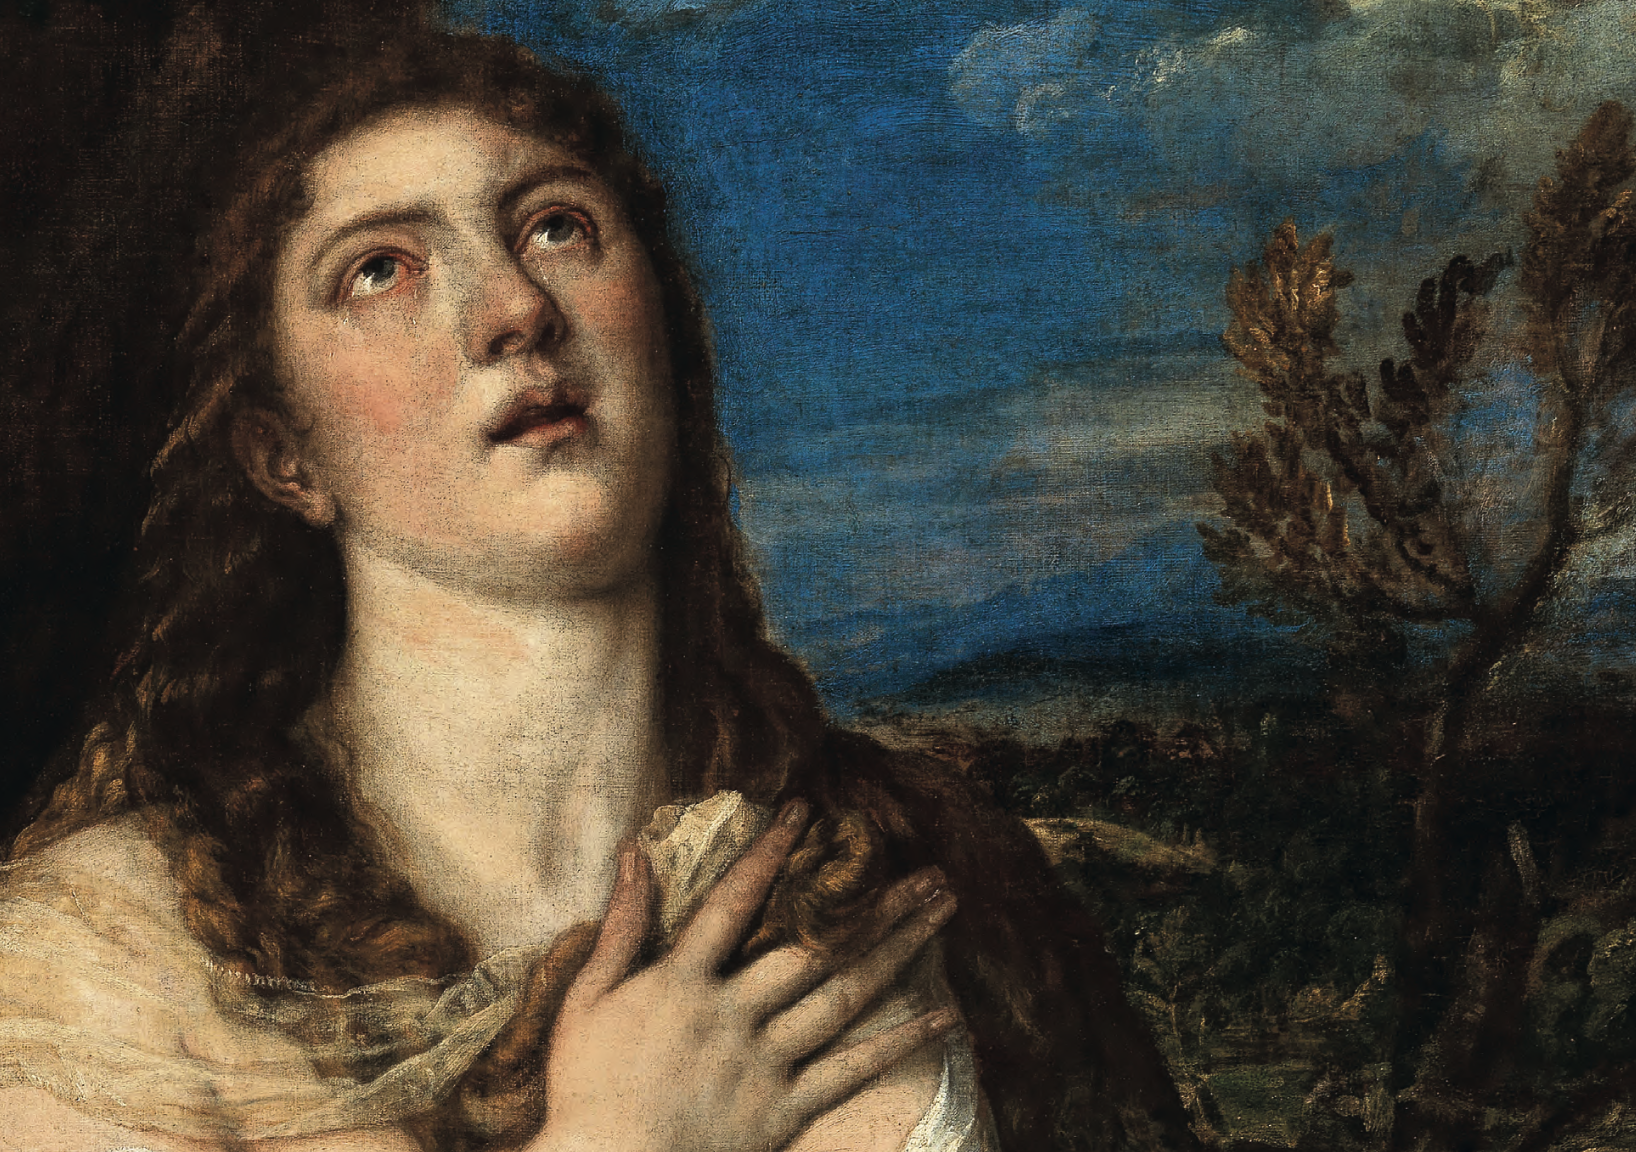 La Maddalena penitente di Tiziano triplica le stime e vola a 4,8 milioni da Dorotheum